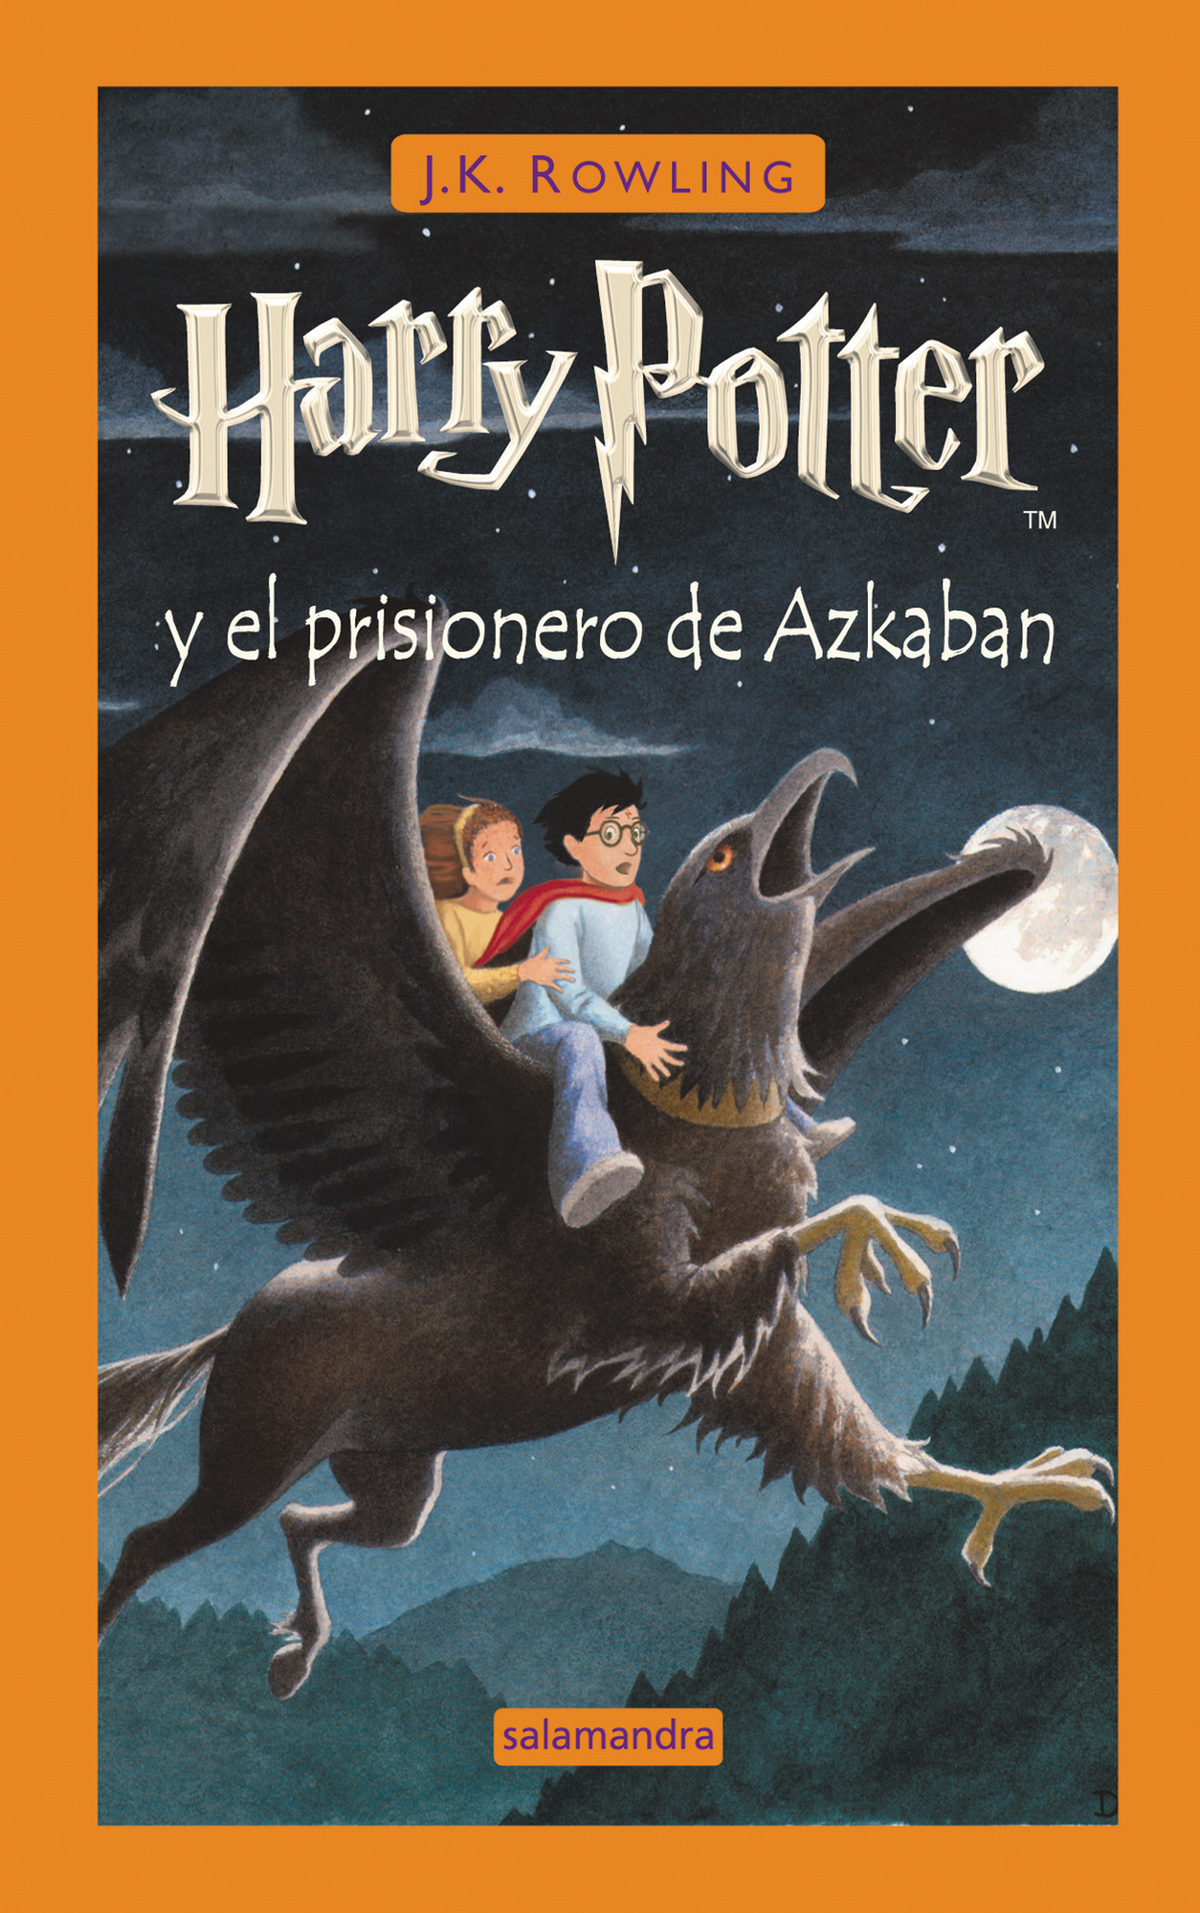 Harry Potter y el prisionero de Azkaban | Harry Potter Wiki | Fandom